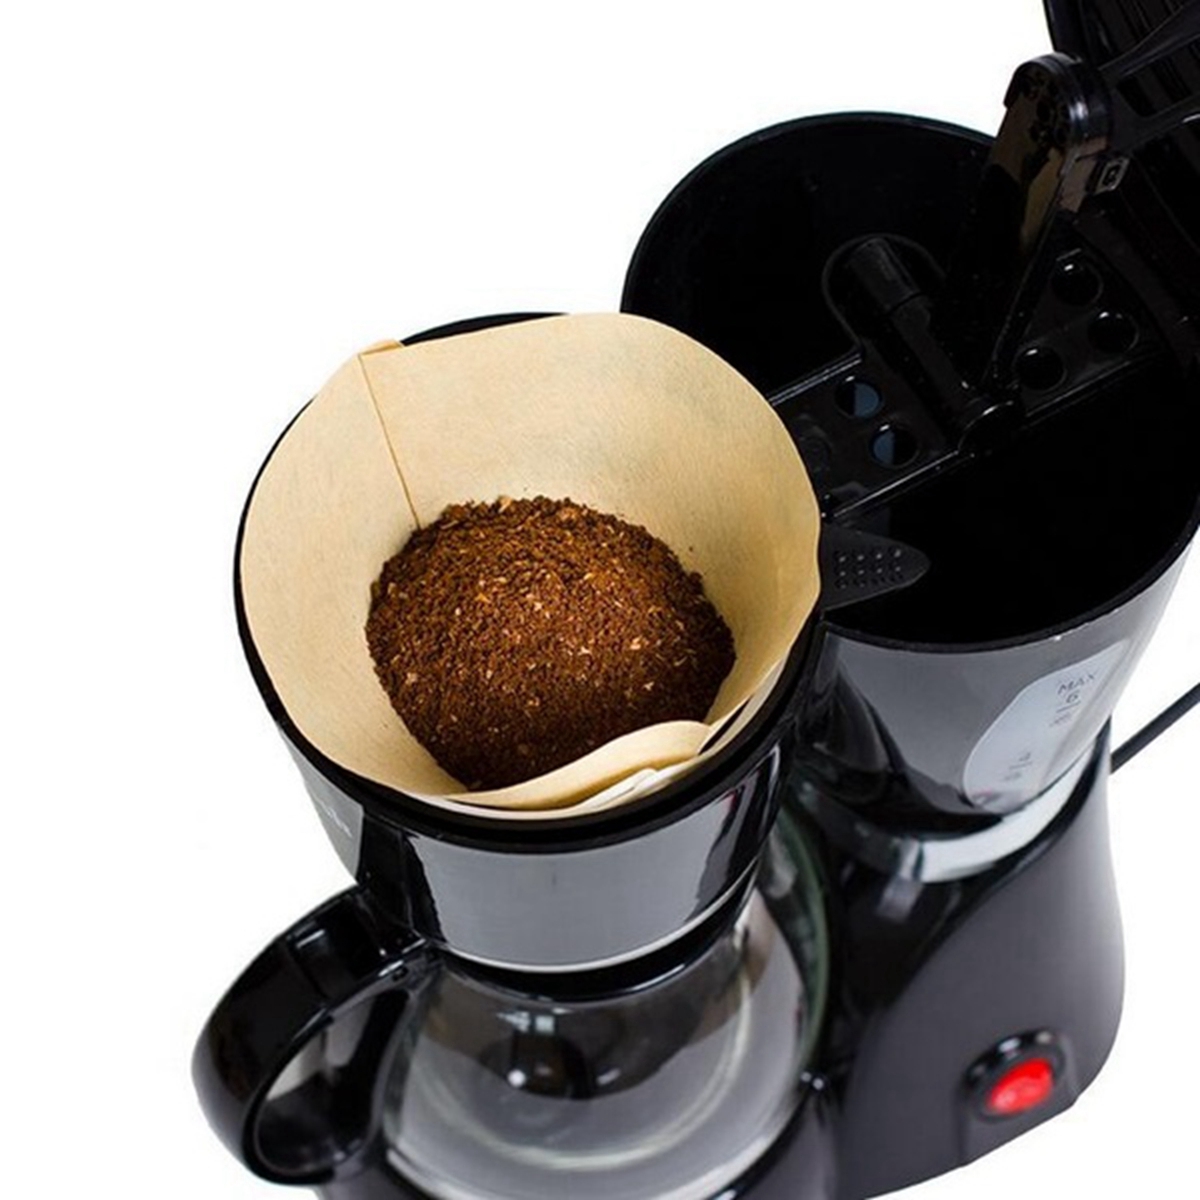 Bộ 100 tờ giấy lọc cà phê hình chữ V size 02 dùng cho máy pha cà phê espresso V60 và pha được 1-4 cốc cà phê phin